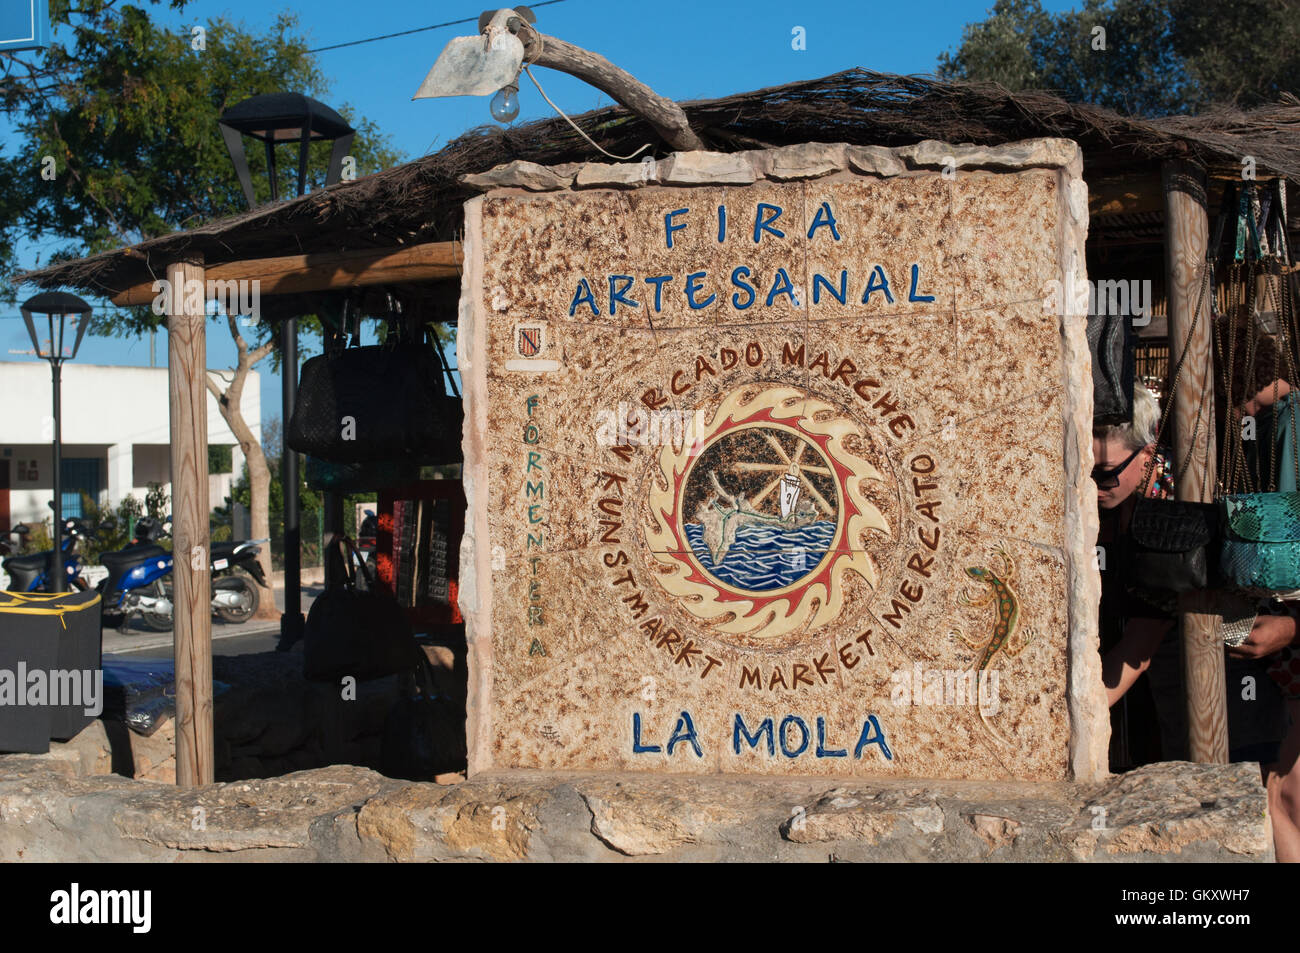 Formentera, Formentera, Espagne : le signe de la Foire de La Mola, le plus célèbre marché d'art et d'artisanat sur l'île de Juin à Octobre Banque D'Images